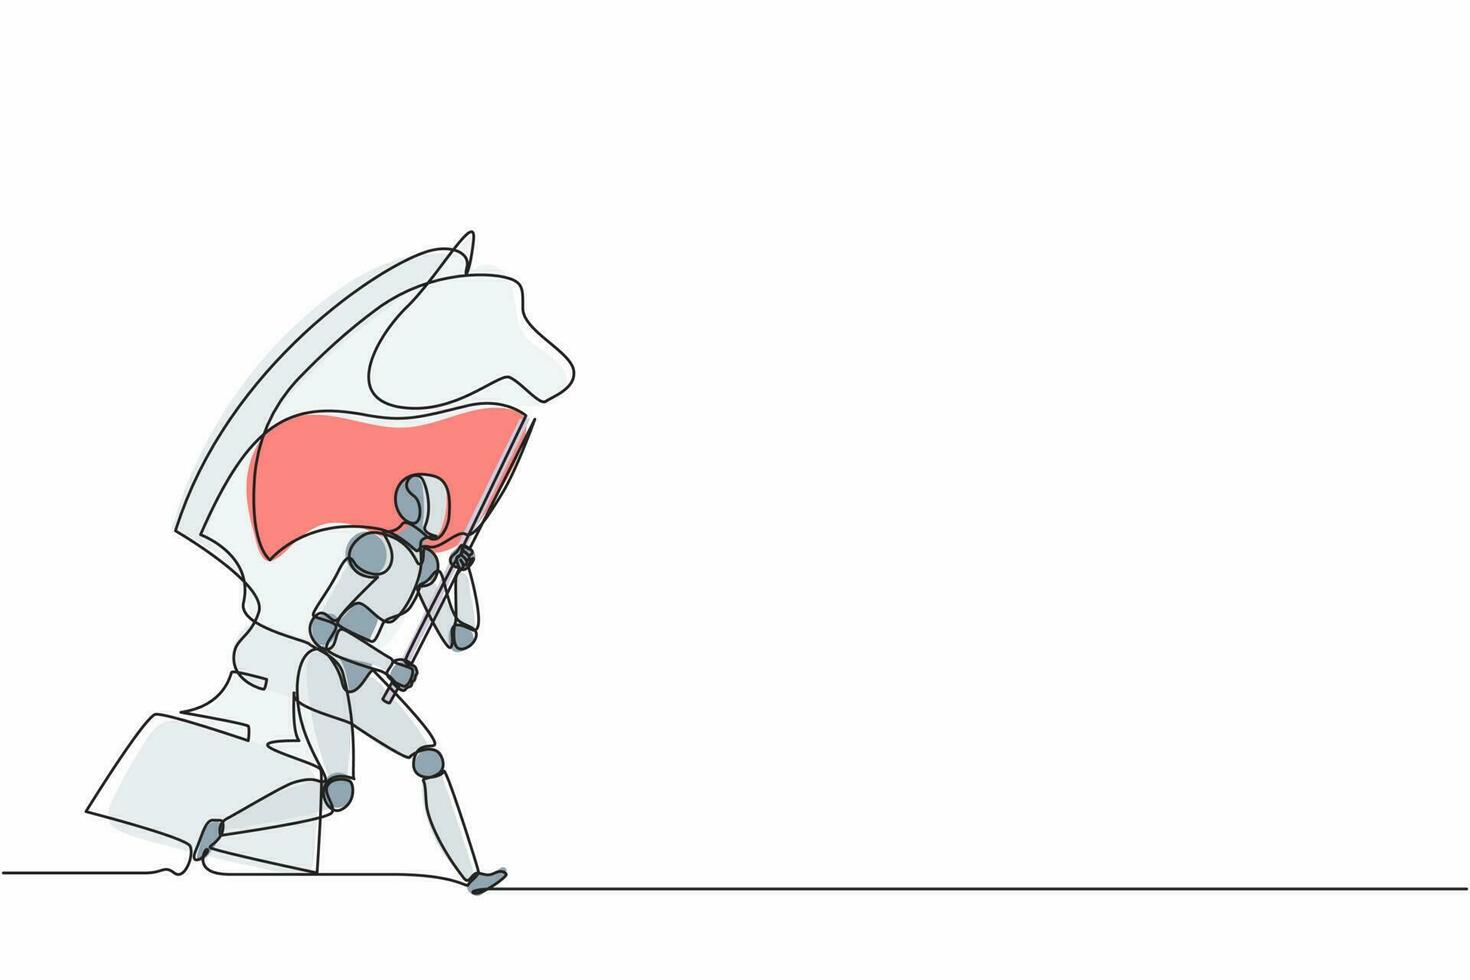 kontinuierlich eine Linie zeichnende Roboter, die Flagge neben dem großen Pferderitterschach laufen und halten. humanoider Roboter kybernetischer Organismus. zukünftiges robotikentwicklungskonzept. einzeilige Design-Vektorgrafik vektor